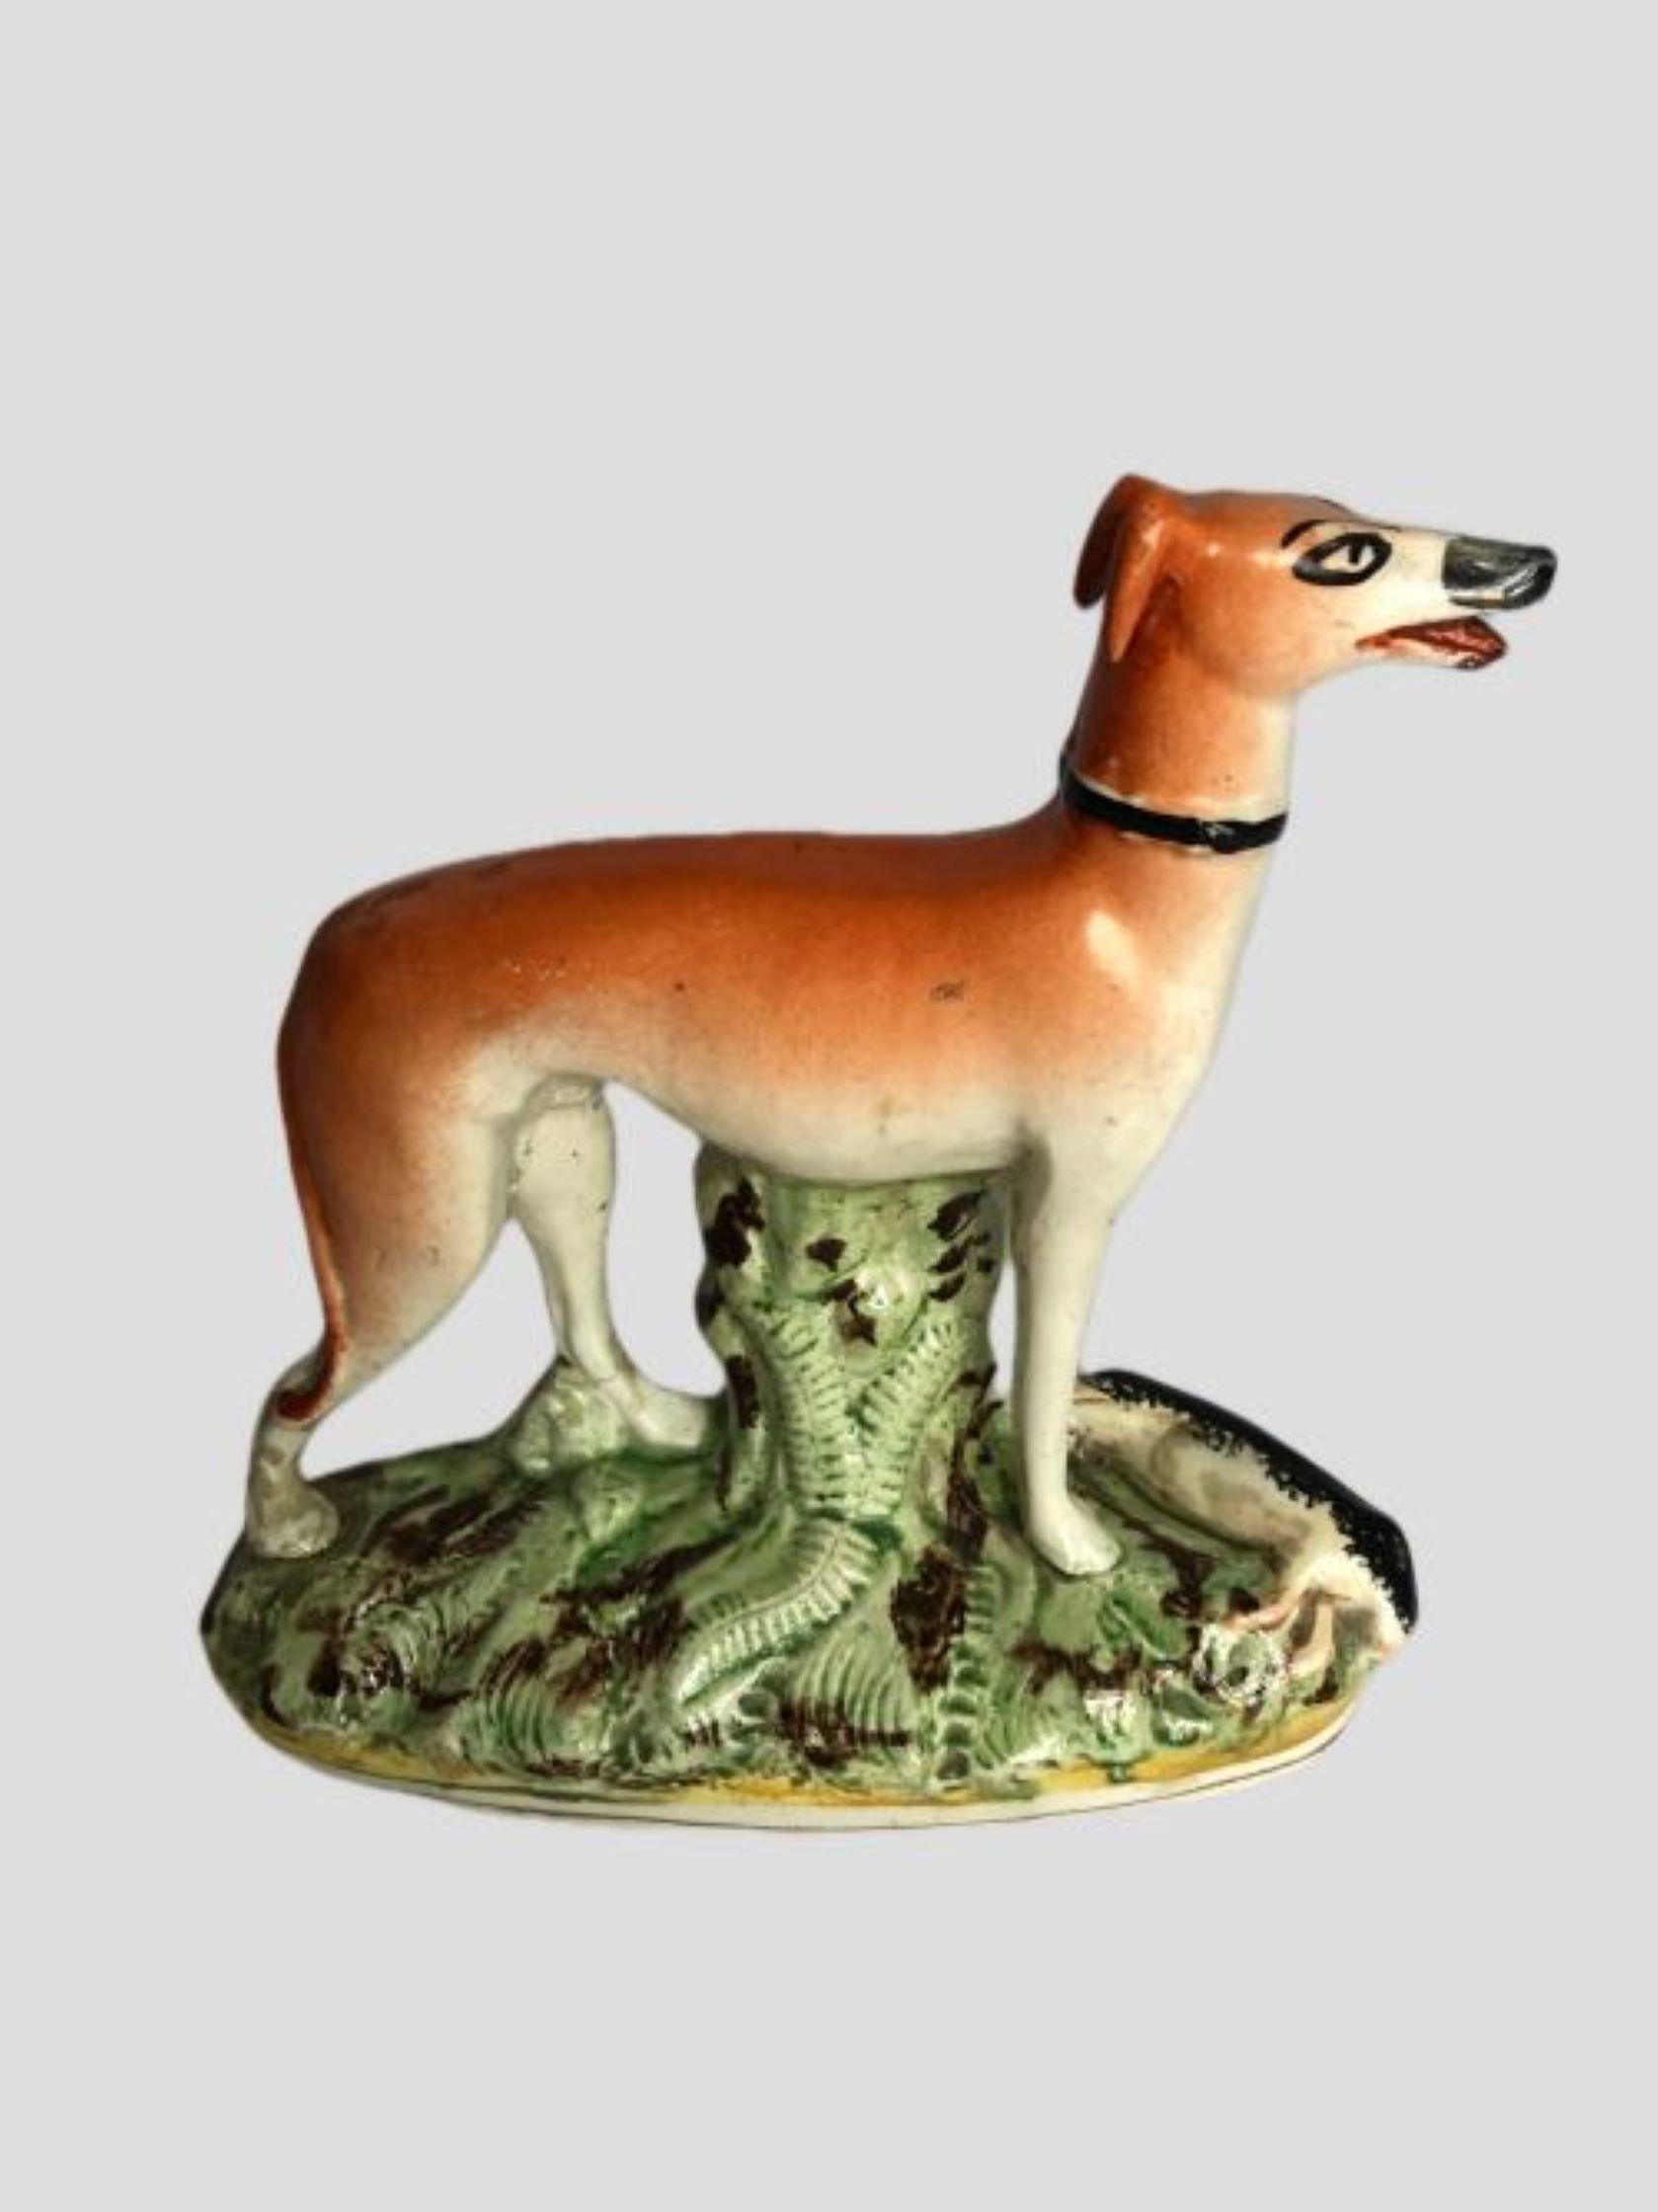 Ancienne figurine victorienne en Staffordshire représentant un chien lévrier. Merveilleuse figurine en brun et blanc d'un lévrier se tenant sur une base ovale avec des feuilles vertes.